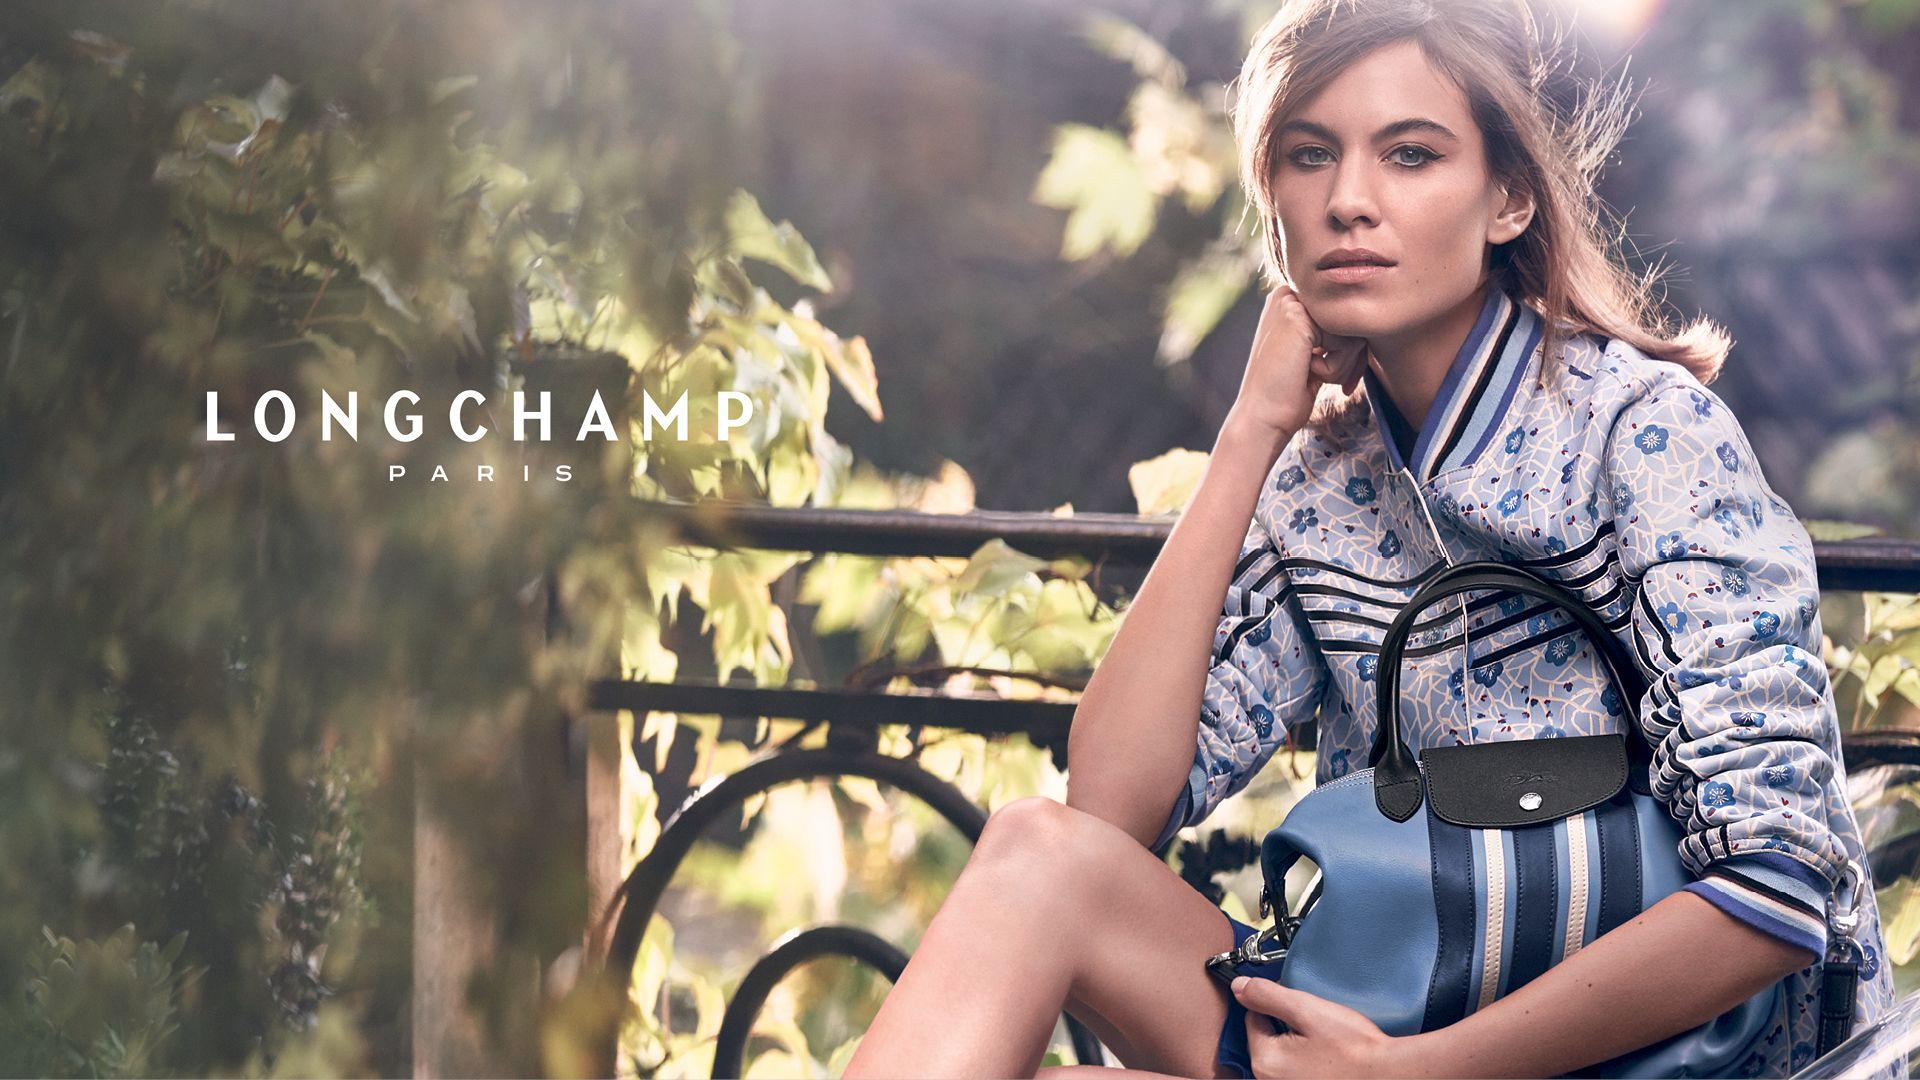 Alexa Chung Returns As The Face Of Longchamp